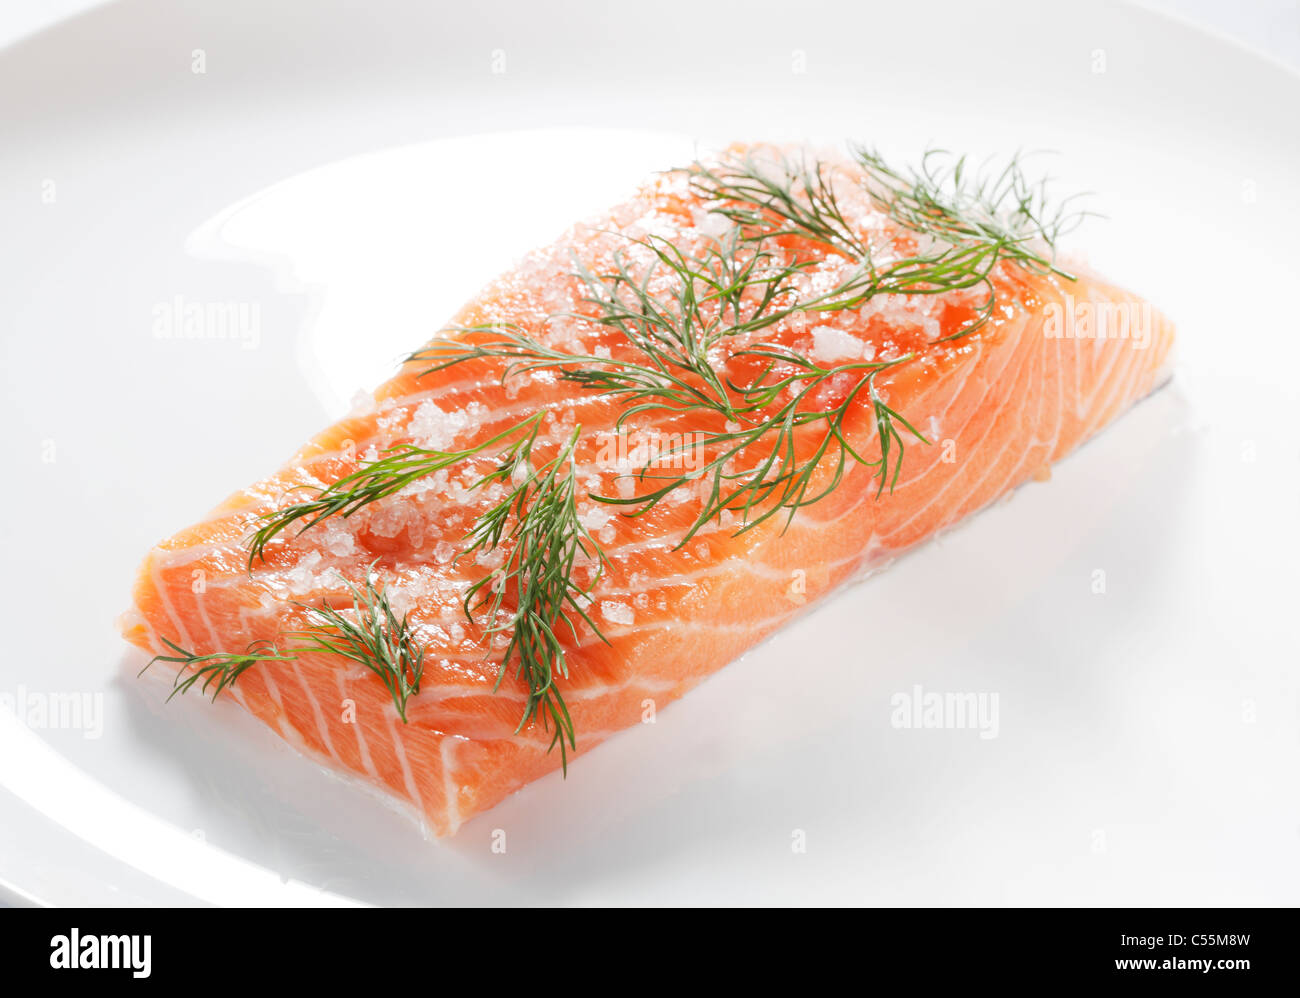 Le sel et le sucre guéri, saumon Gravlax scandinave traditionnelle appelée "' sur une plaque blanche. Banque D'Images